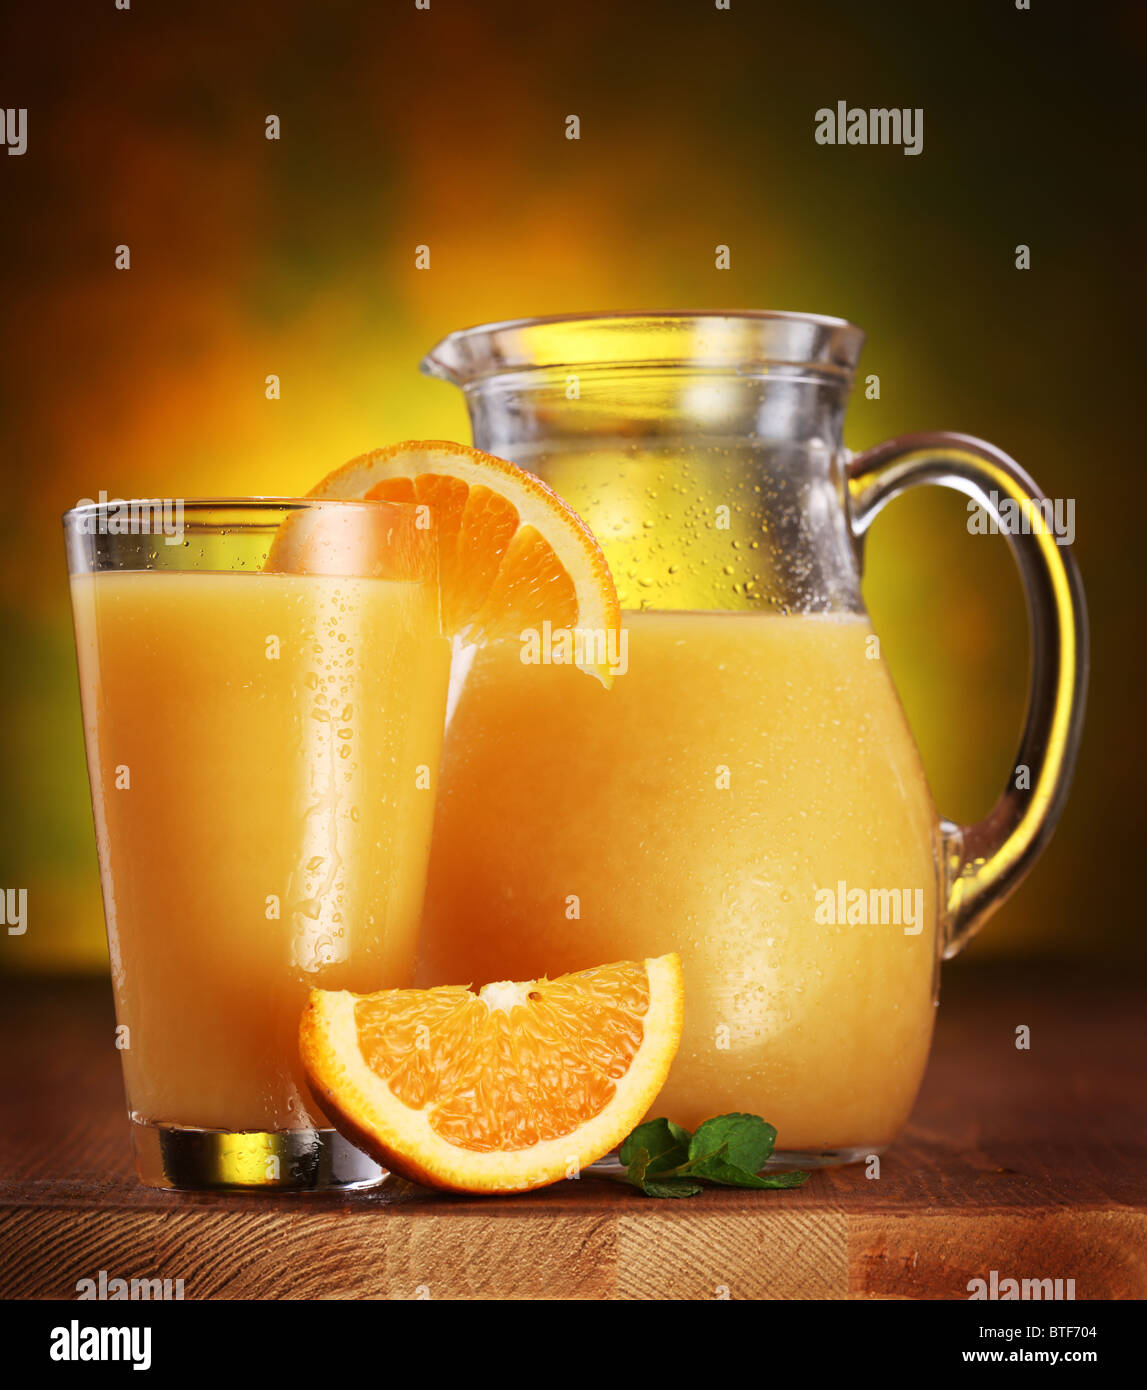 Stillleben: Orangen, Glas Saft und Krug voller Saft auf einem Holztisch. Stockfoto